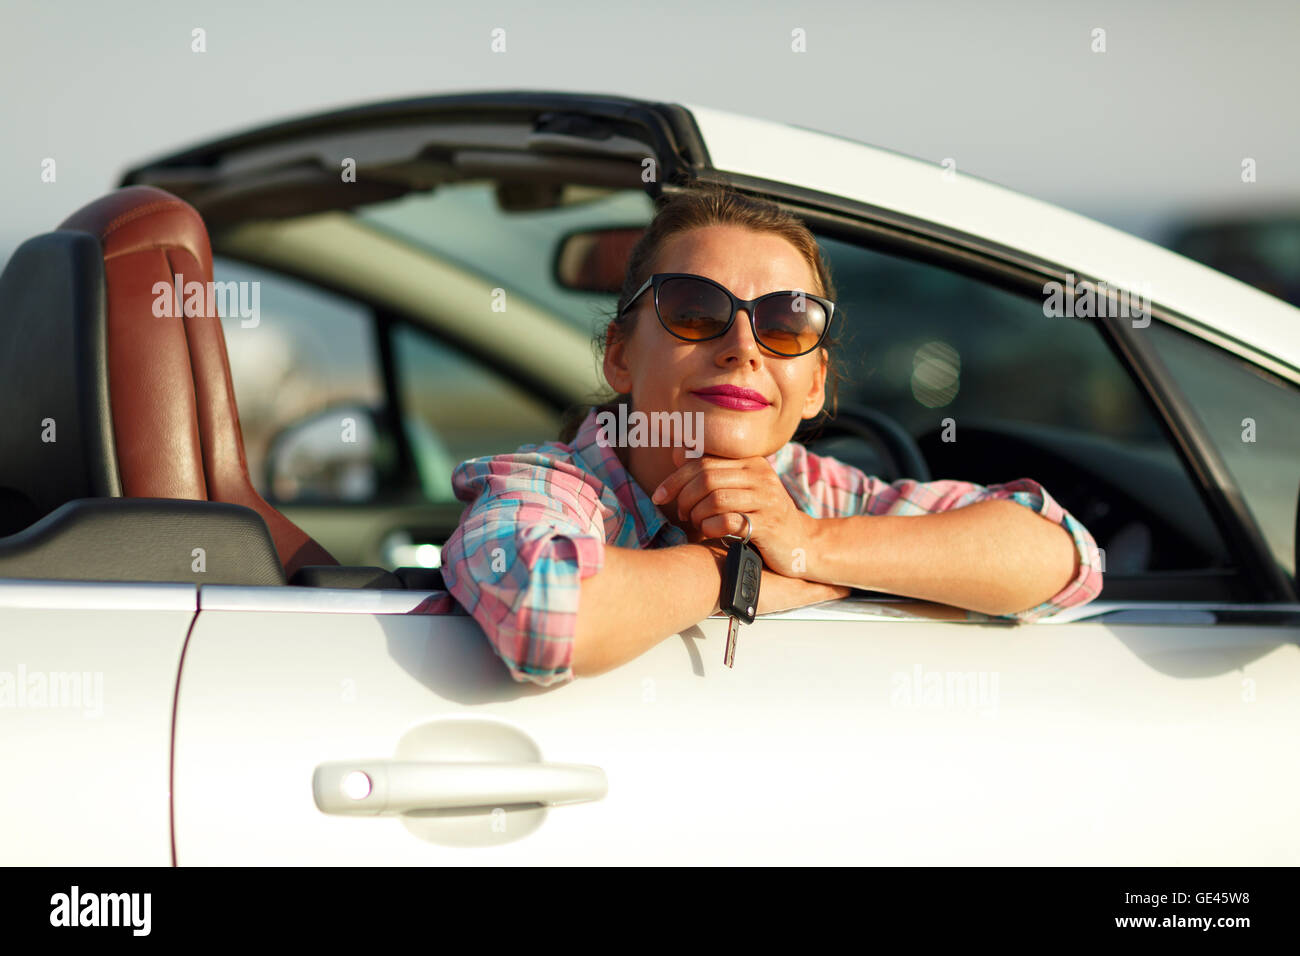 Jolie Jeune femme assise dans une voiture décapotable avec les clés en main - concept de l'achat d'une auto ou d'une voiture de location Banque D'Images